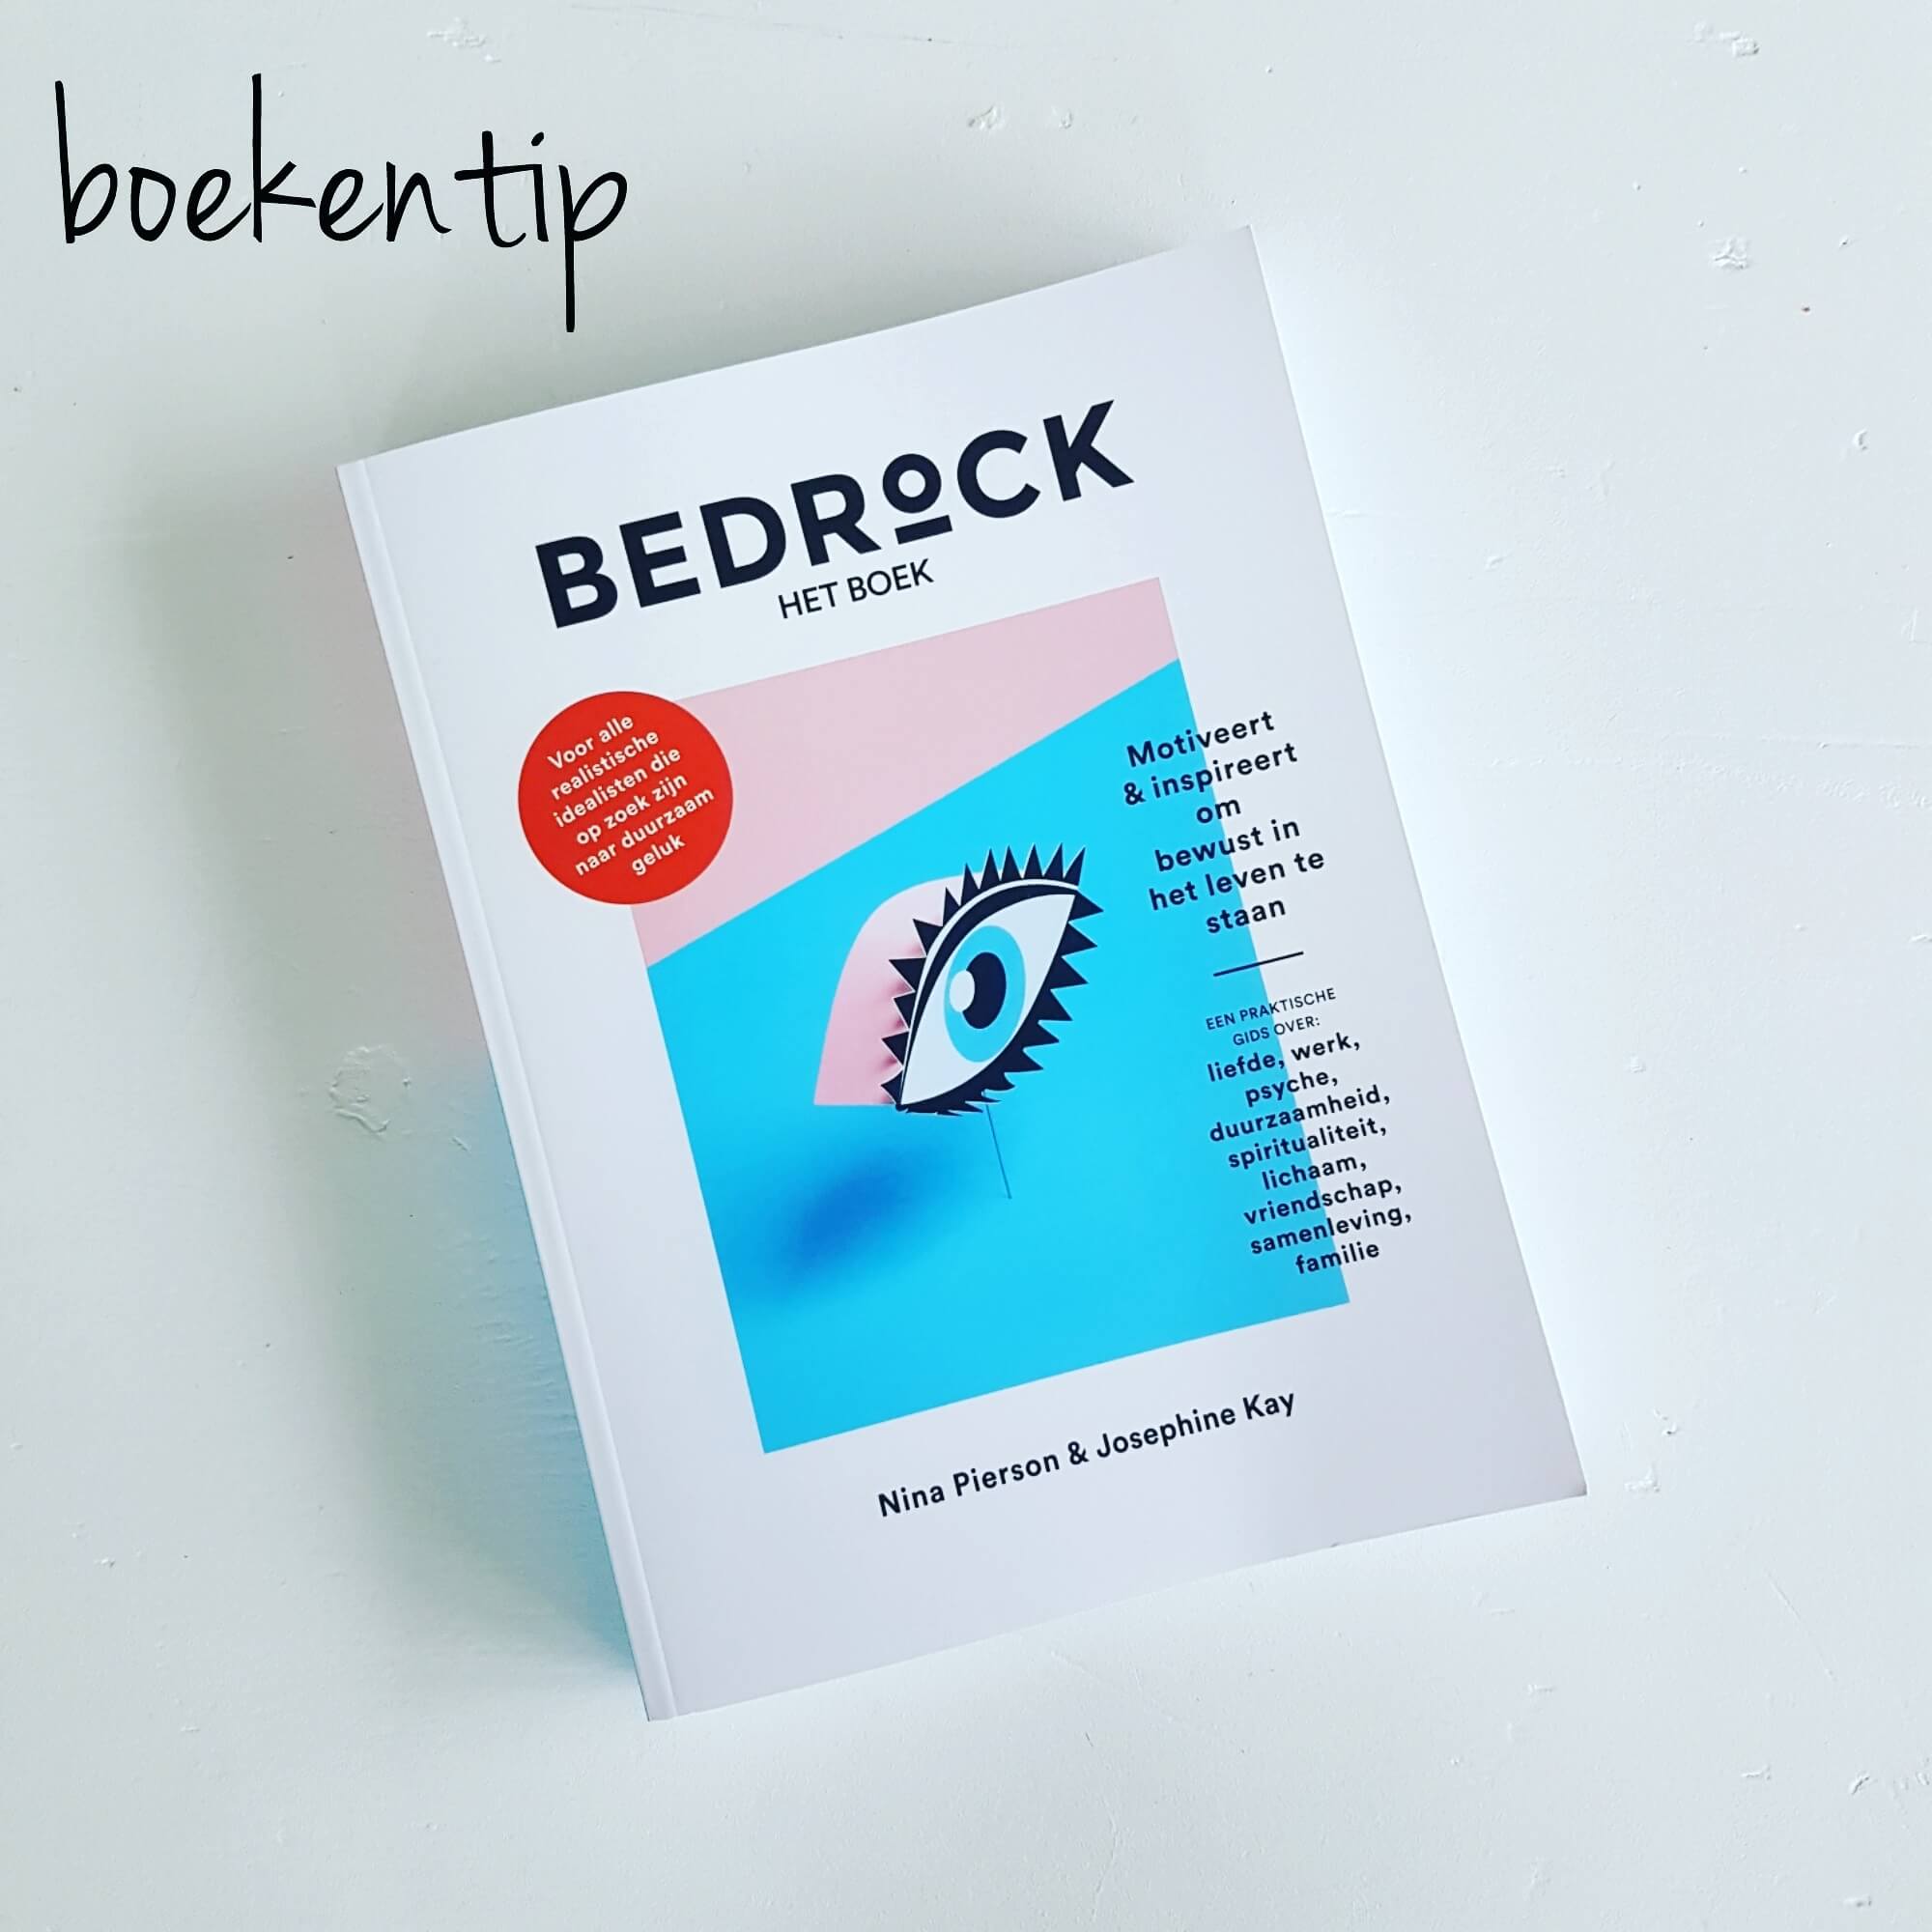 Boekentip voor jezelf: het boek van Bedrock